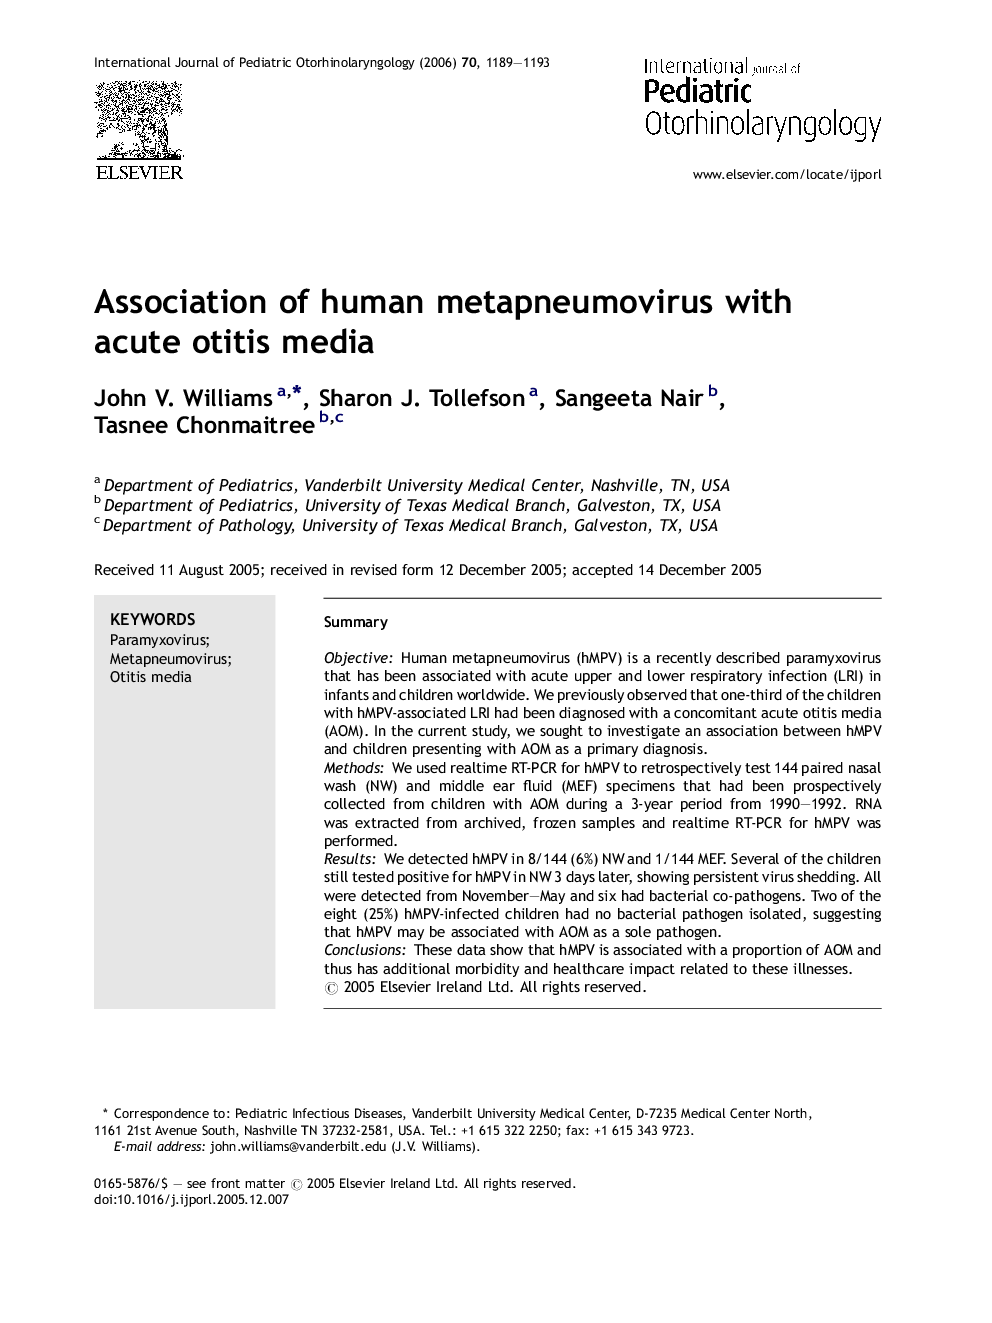 Association of human metapneumovirus with acute otitis media